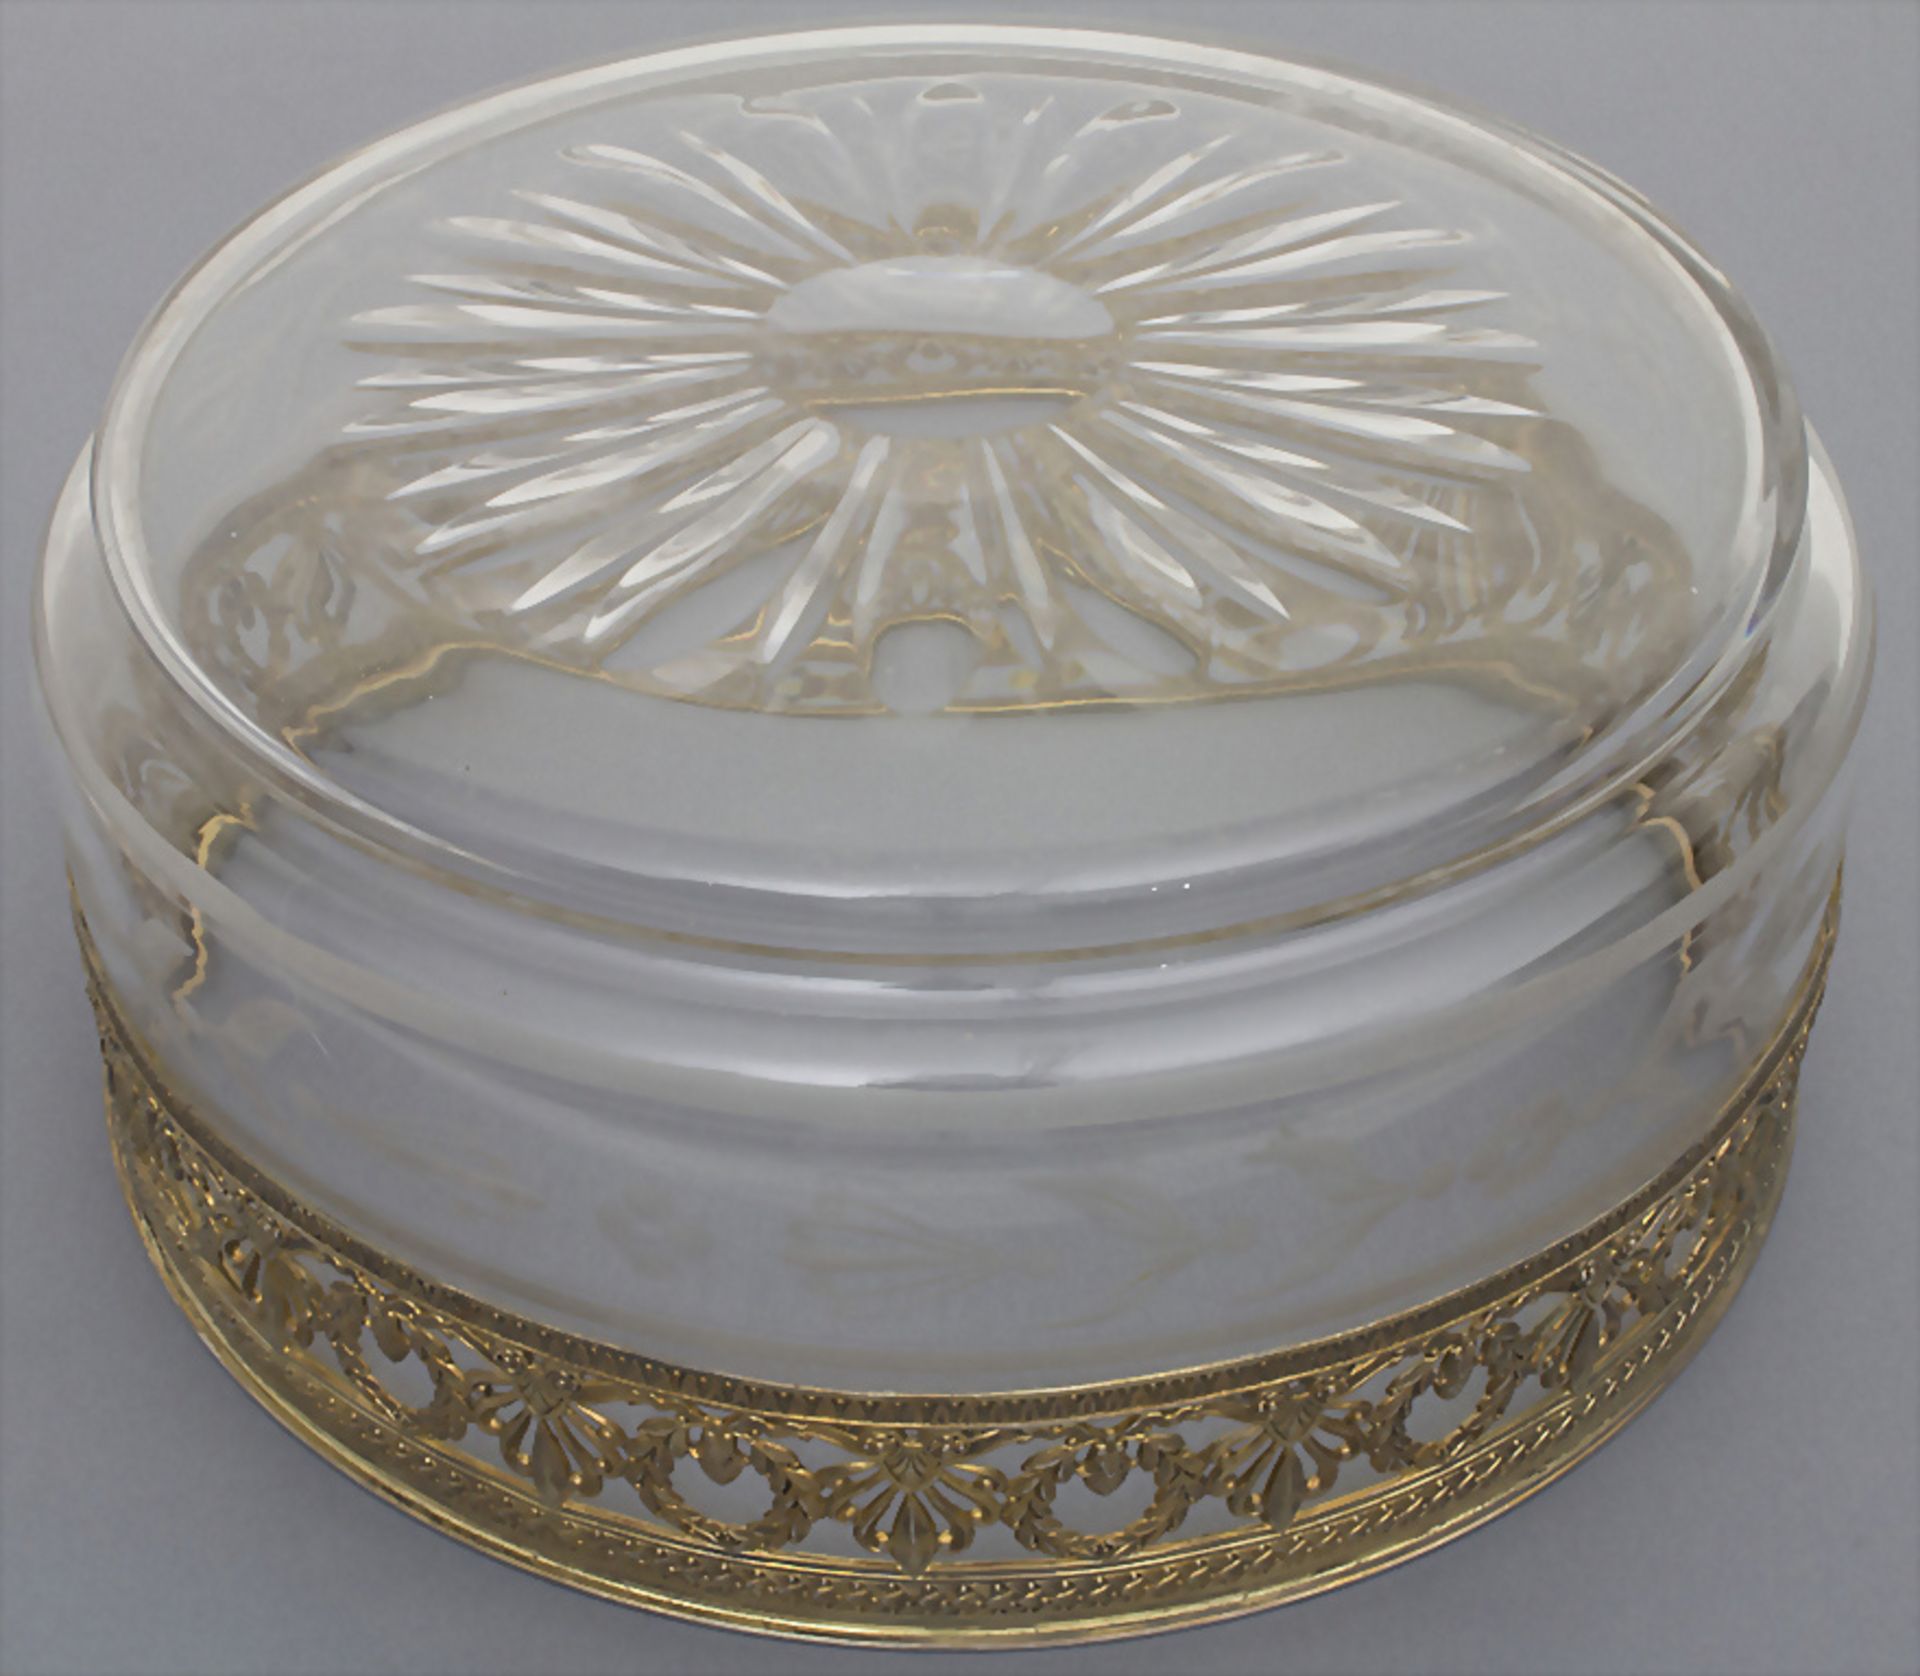 Kristallschale mit Silbermontur / A crystal bowl with silver mount, Emile Puiforcat, Paris, um 1900 - Bild 2 aus 4